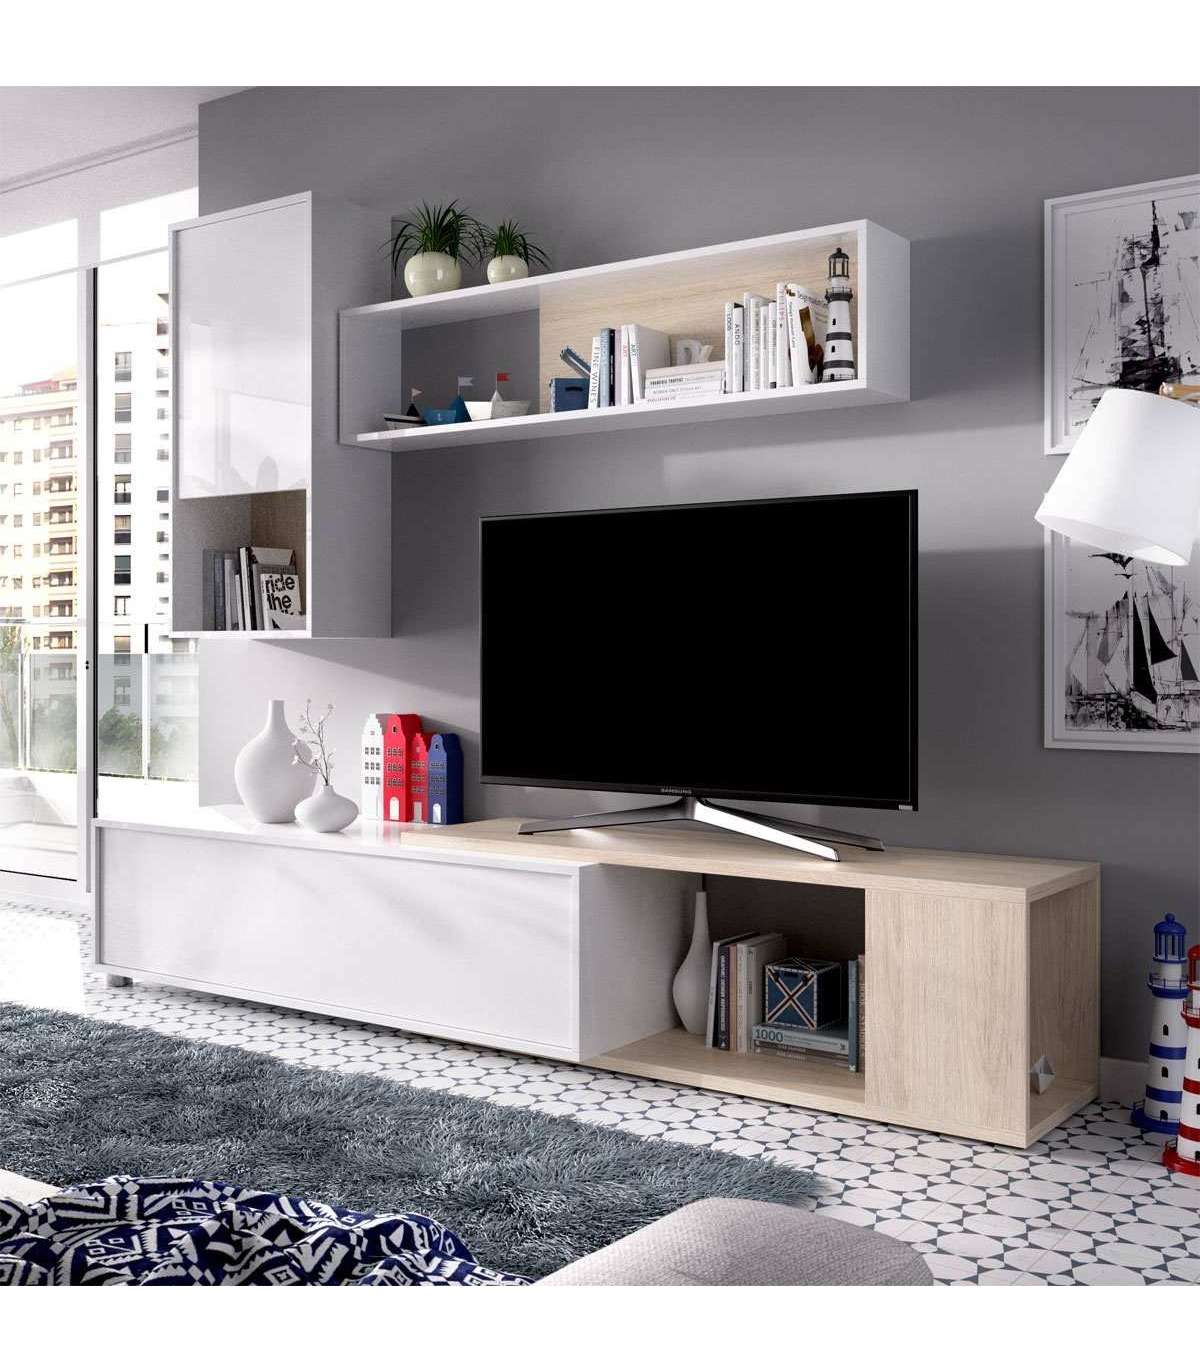 Conjuntos de salón baratos: Diseño y funcionalidad para tu sala de estar